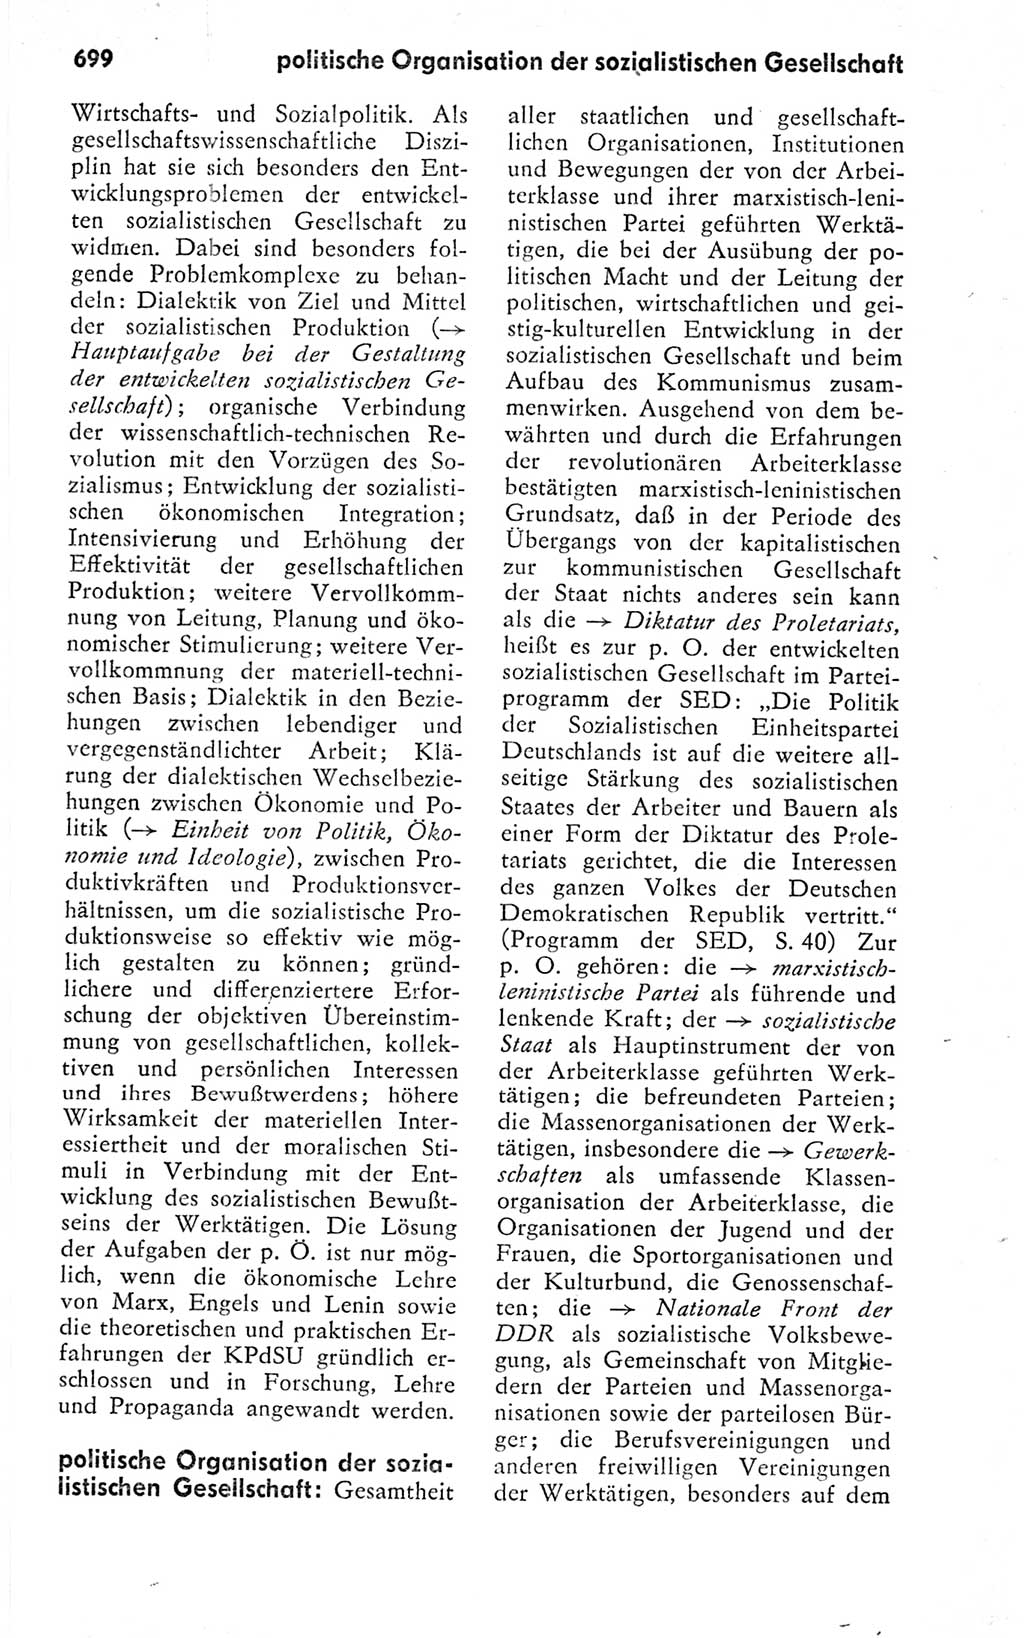 Kleines politisches Wörterbuch [Deutsche Demokratische Republik (DDR)] 1978, Seite 699 (Kl. pol. Wb. DDR 1978, S. 699)